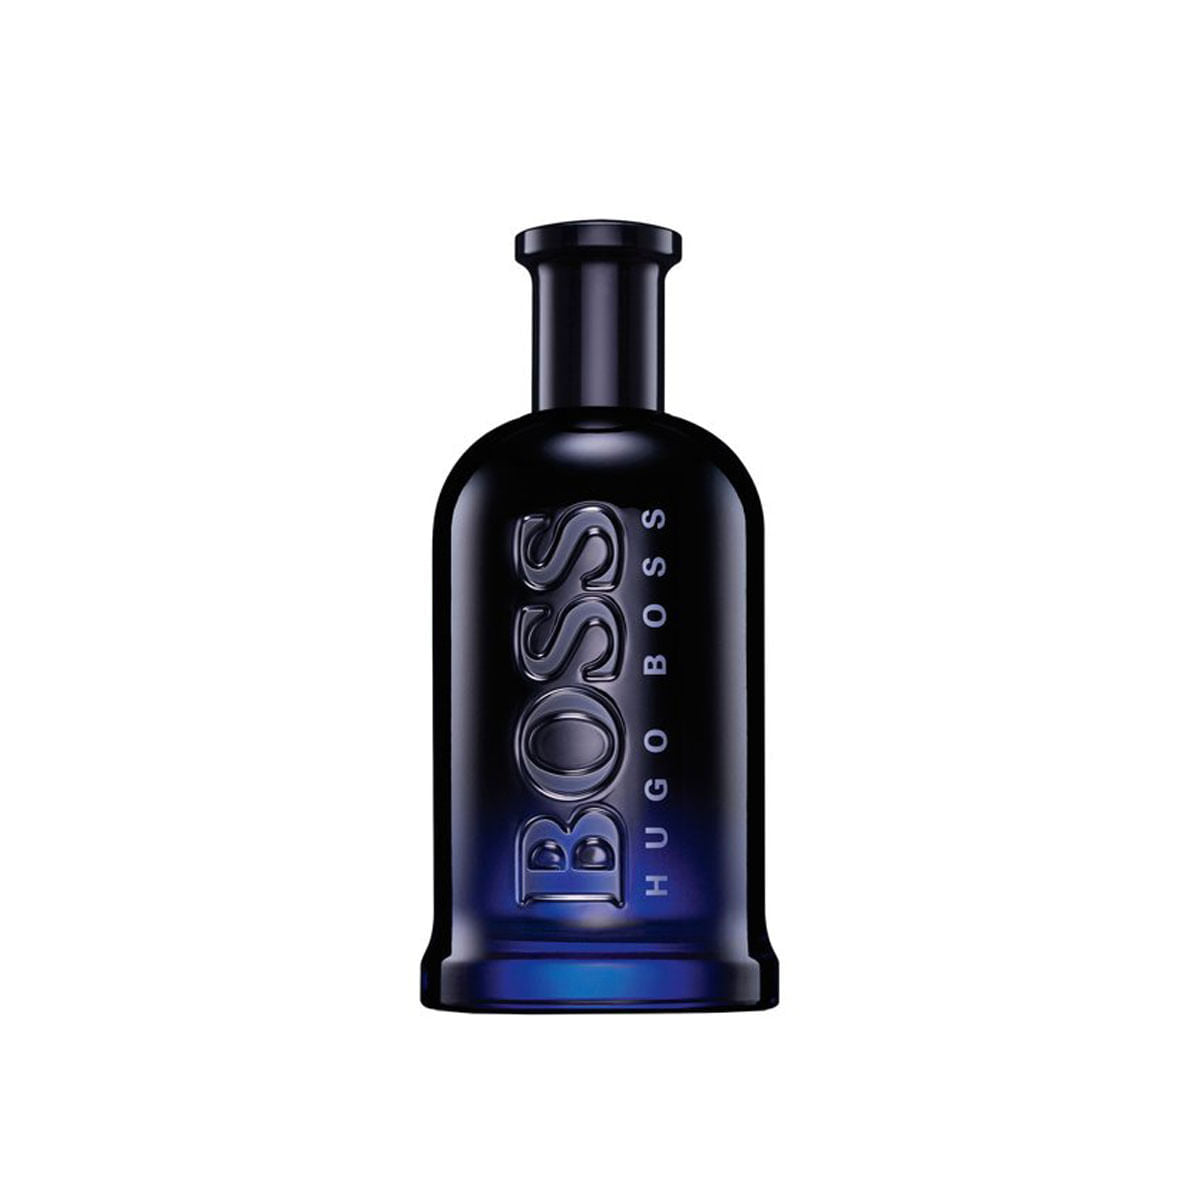 Hugo Boss Bottled Night Eau de Toilette